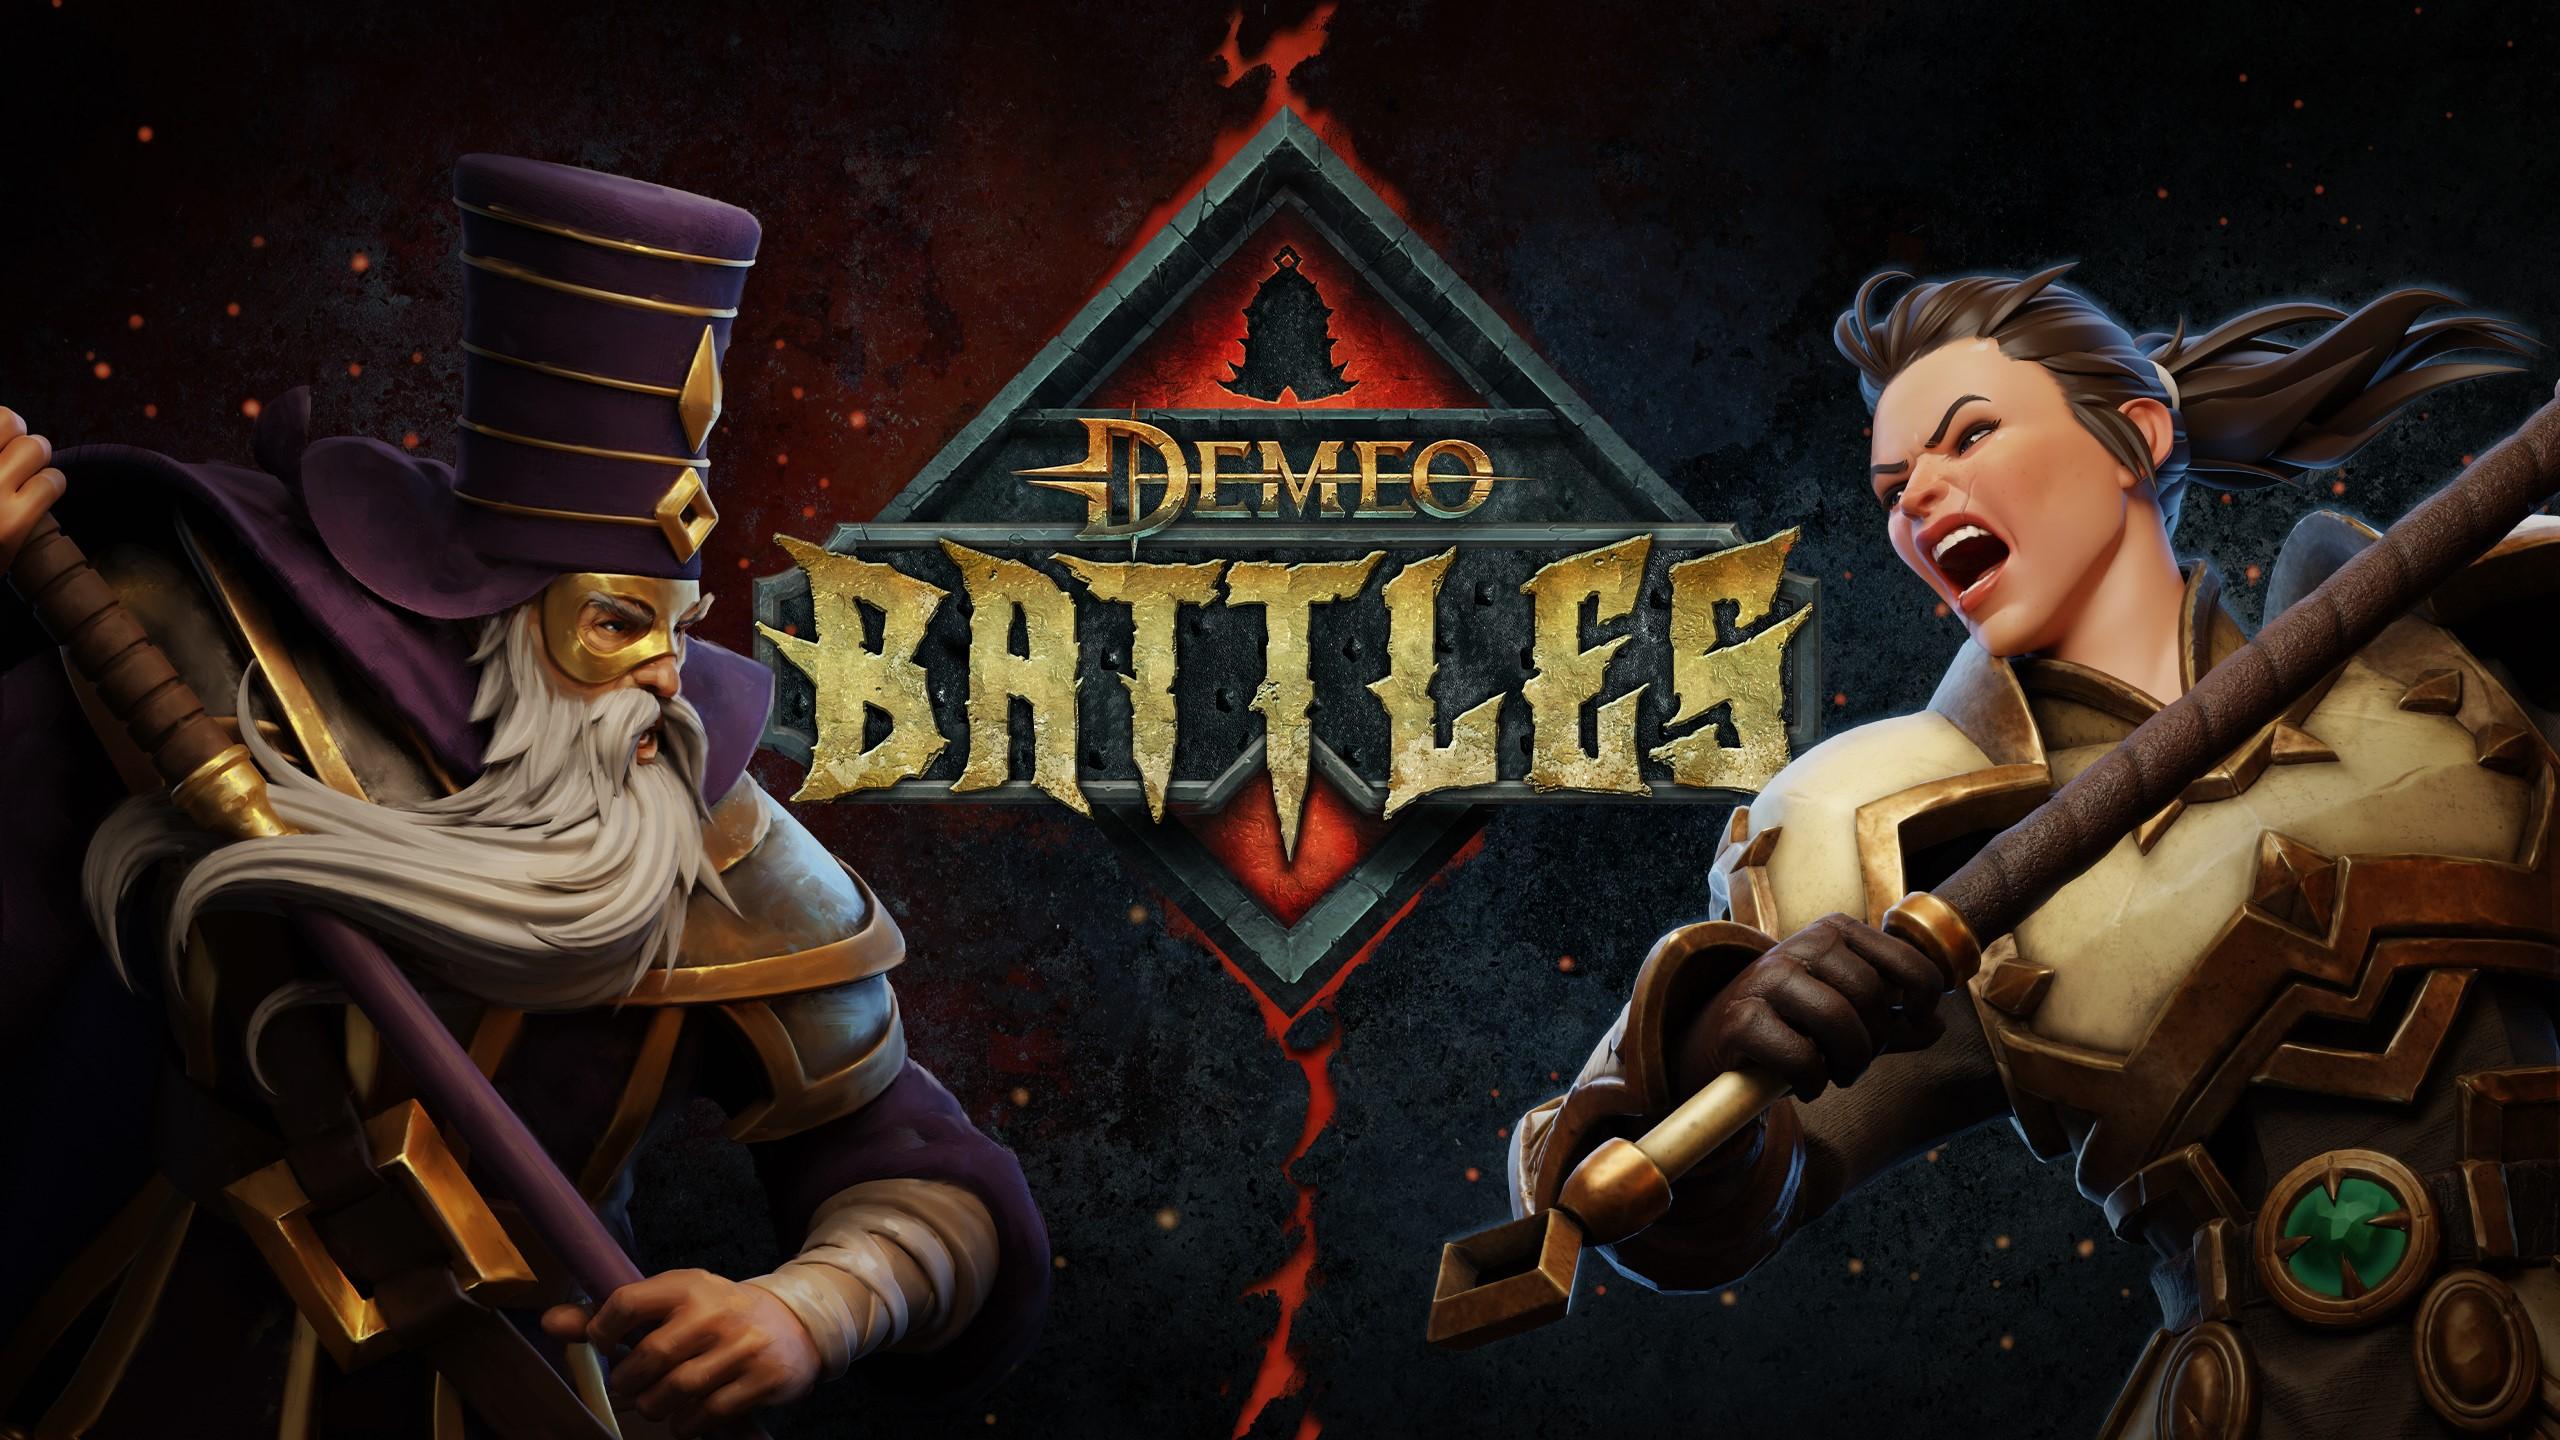 „Demeo Battles“-Schlüsselgrafik mit zwei Champions und dem Logo des Spiels.